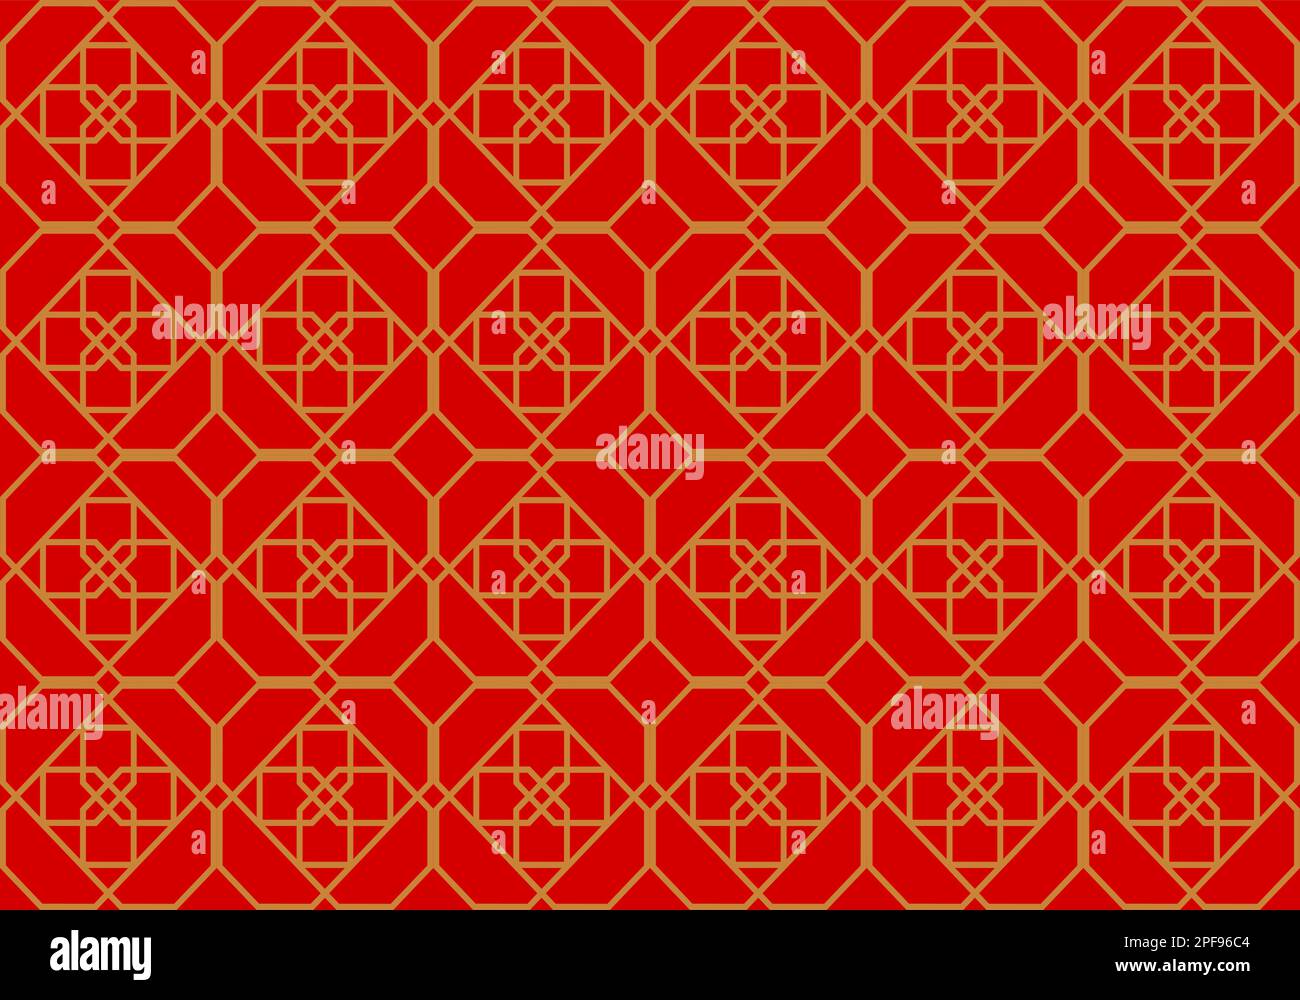 Rote Mosaikfliesen Designkunst für den Hintergrund. Nahtloses Muster. Mosaik. Geometrie. Grafische Konstruktion Von Vektordarstellungen. Stock Vektor